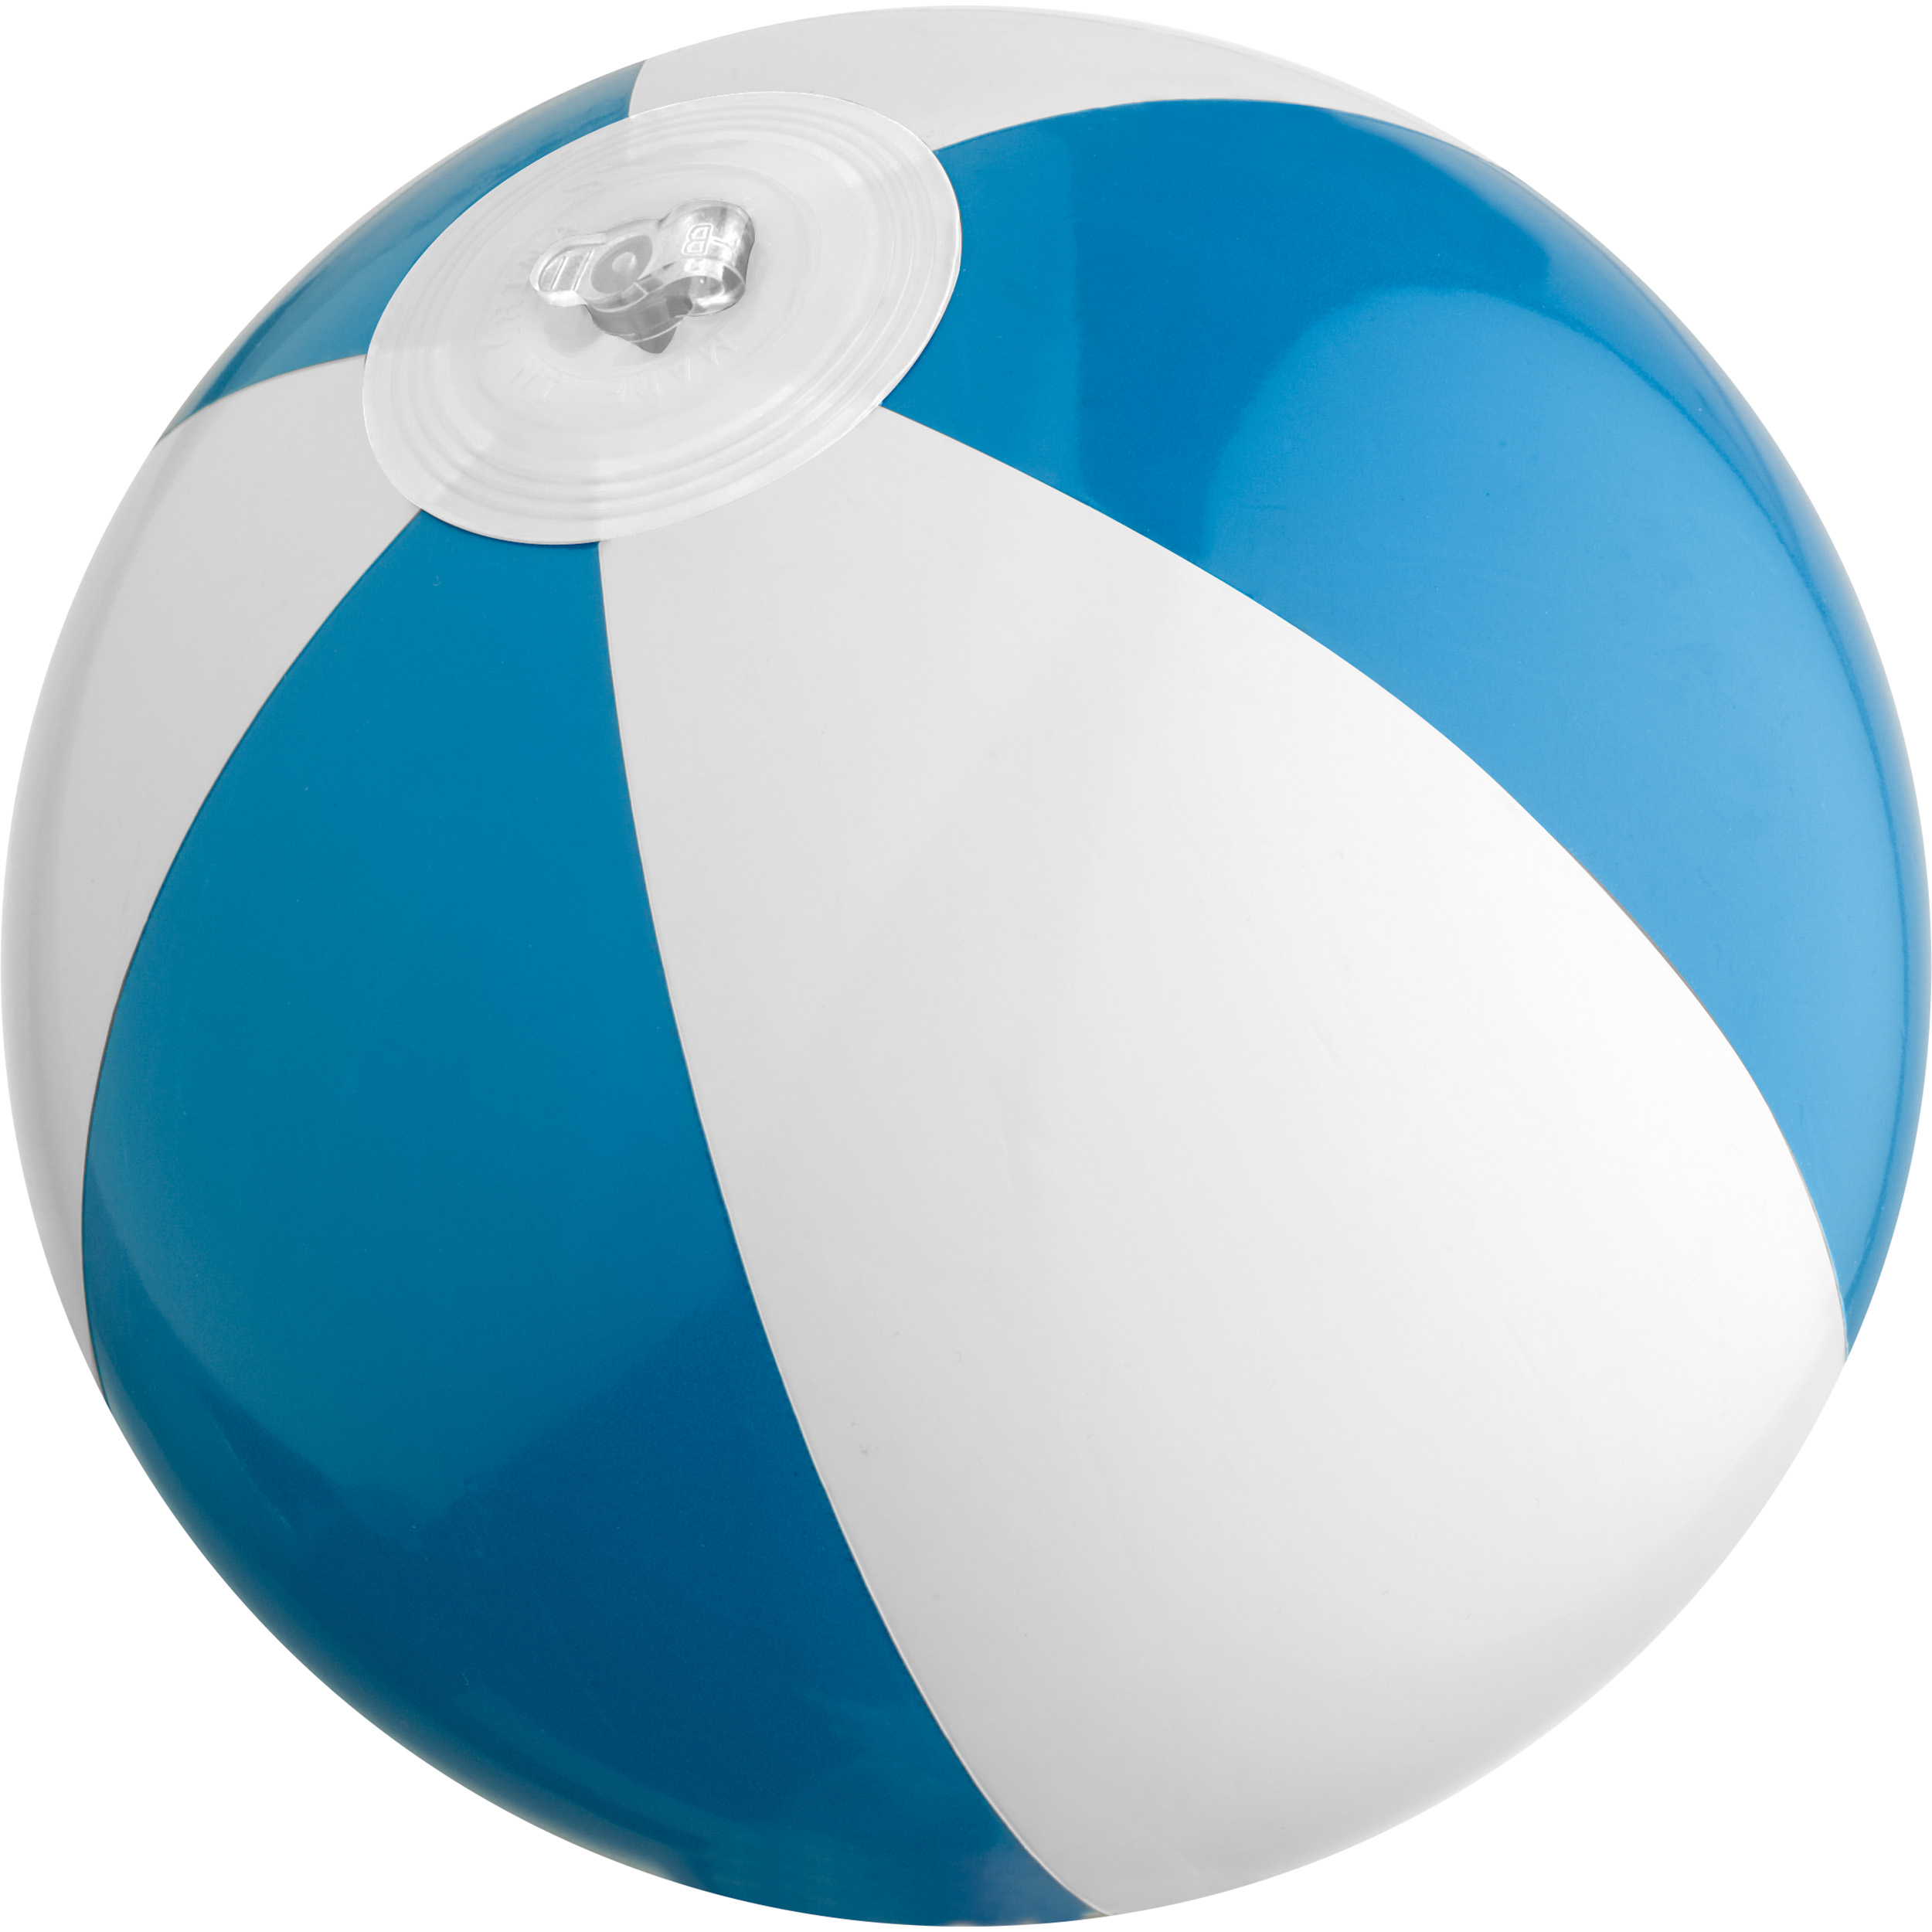 Ballon de Plage avec Logo - Durbuy